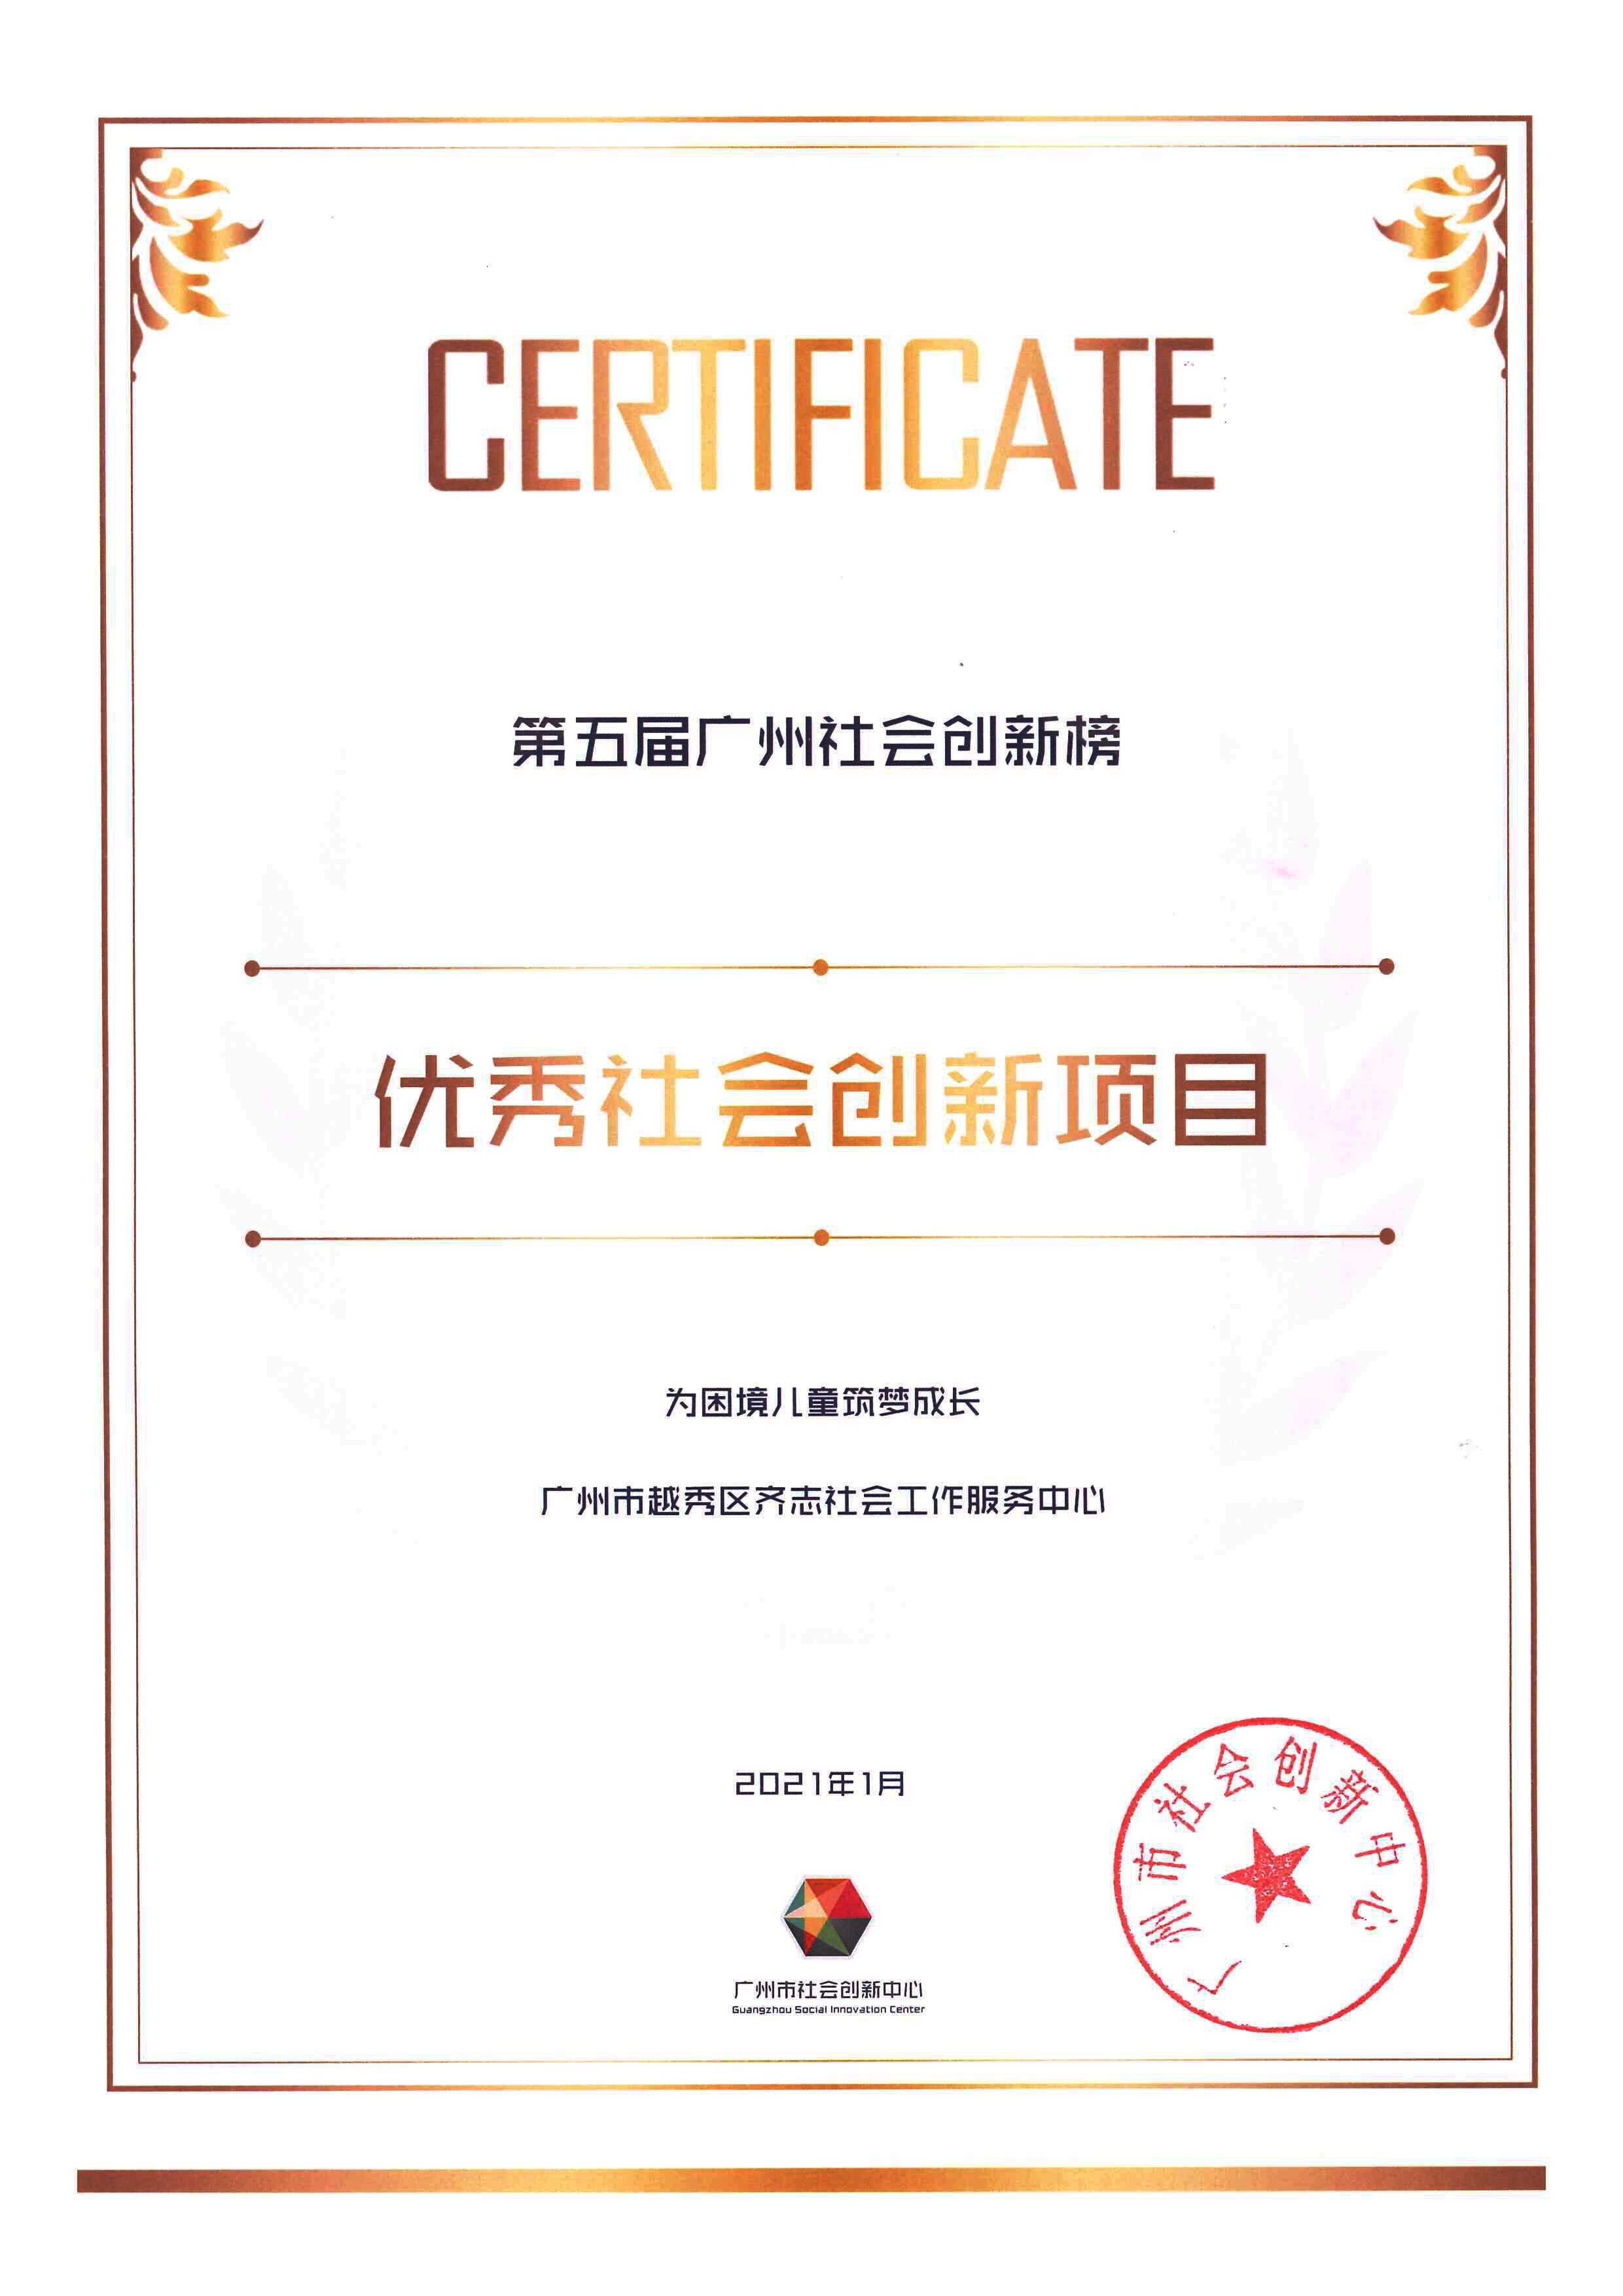 第五届广州社会创新榜-优秀社会创新项目.jpg